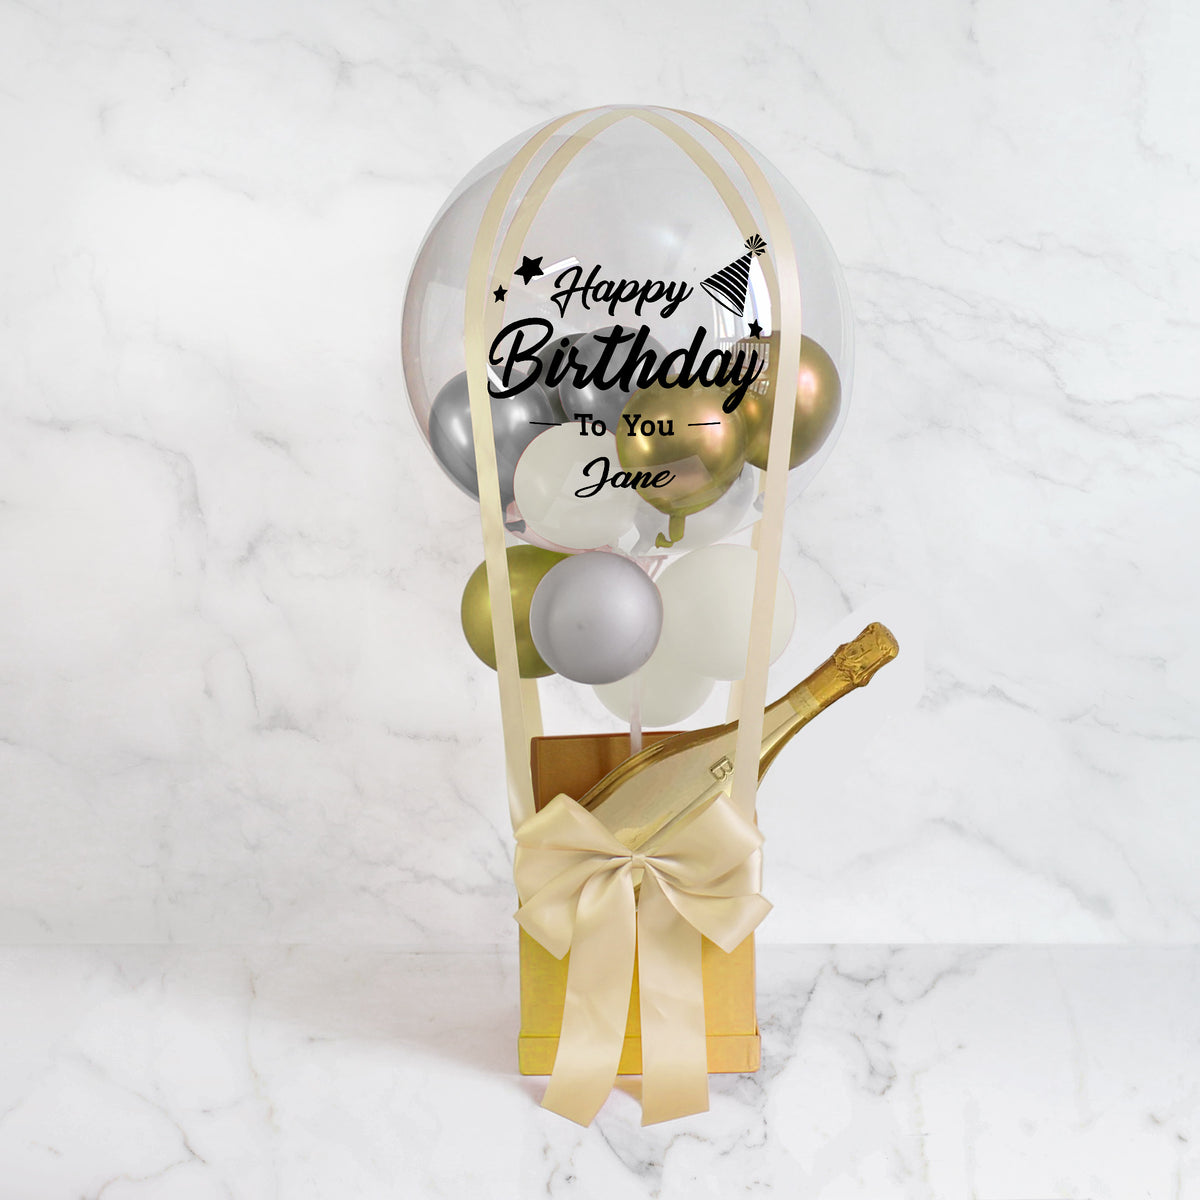 Balloon Birthday Hamper| Champagne balloon gift ， Valentine's Day